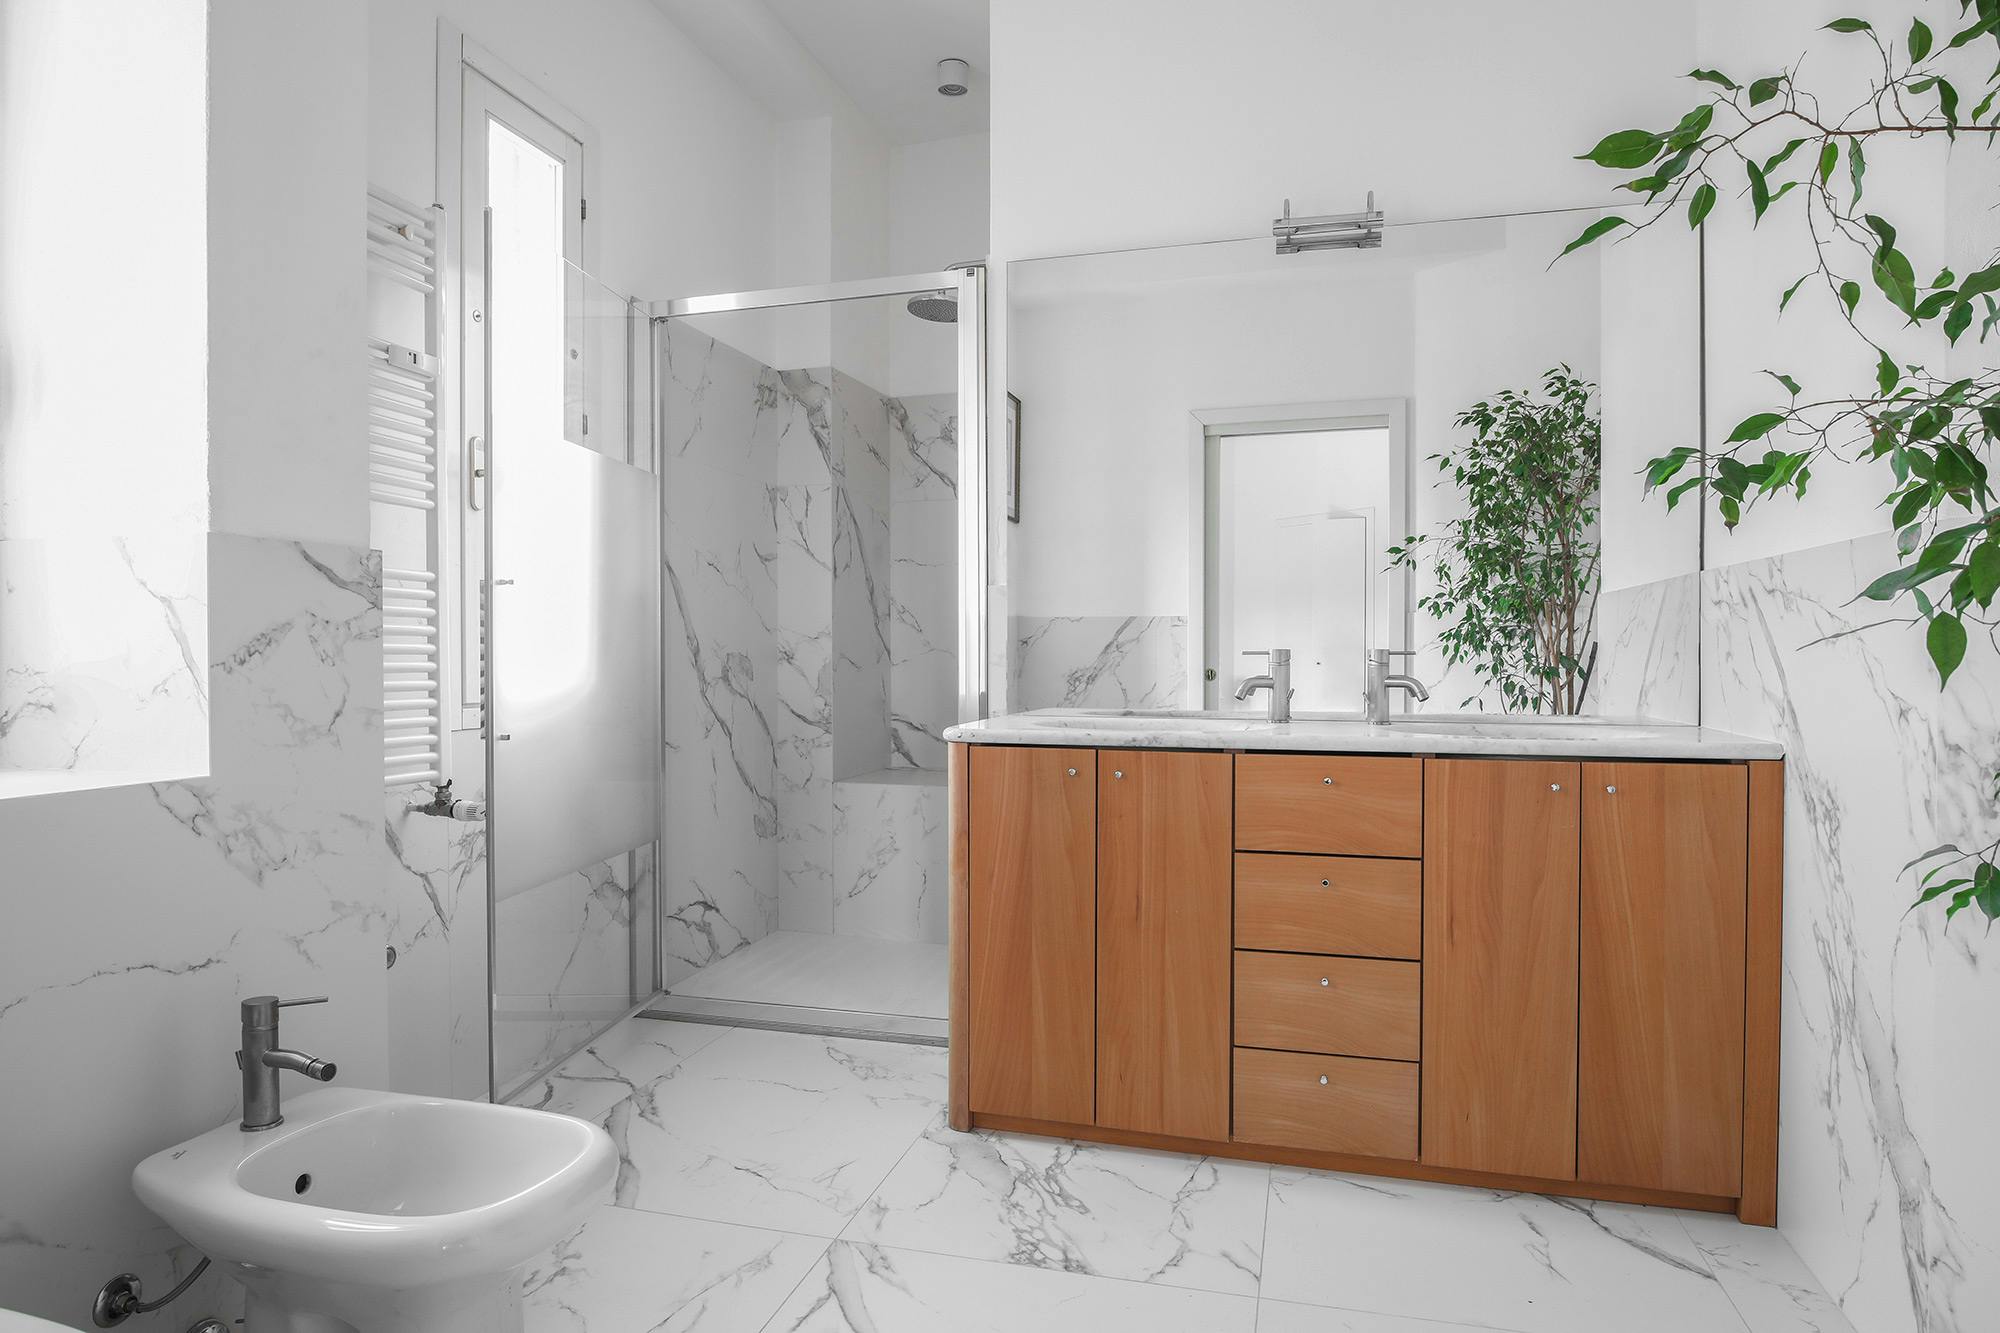 Imagen número 76 de Un baño privado en Milán amplio, resistente y elegante gracias a Dekton 